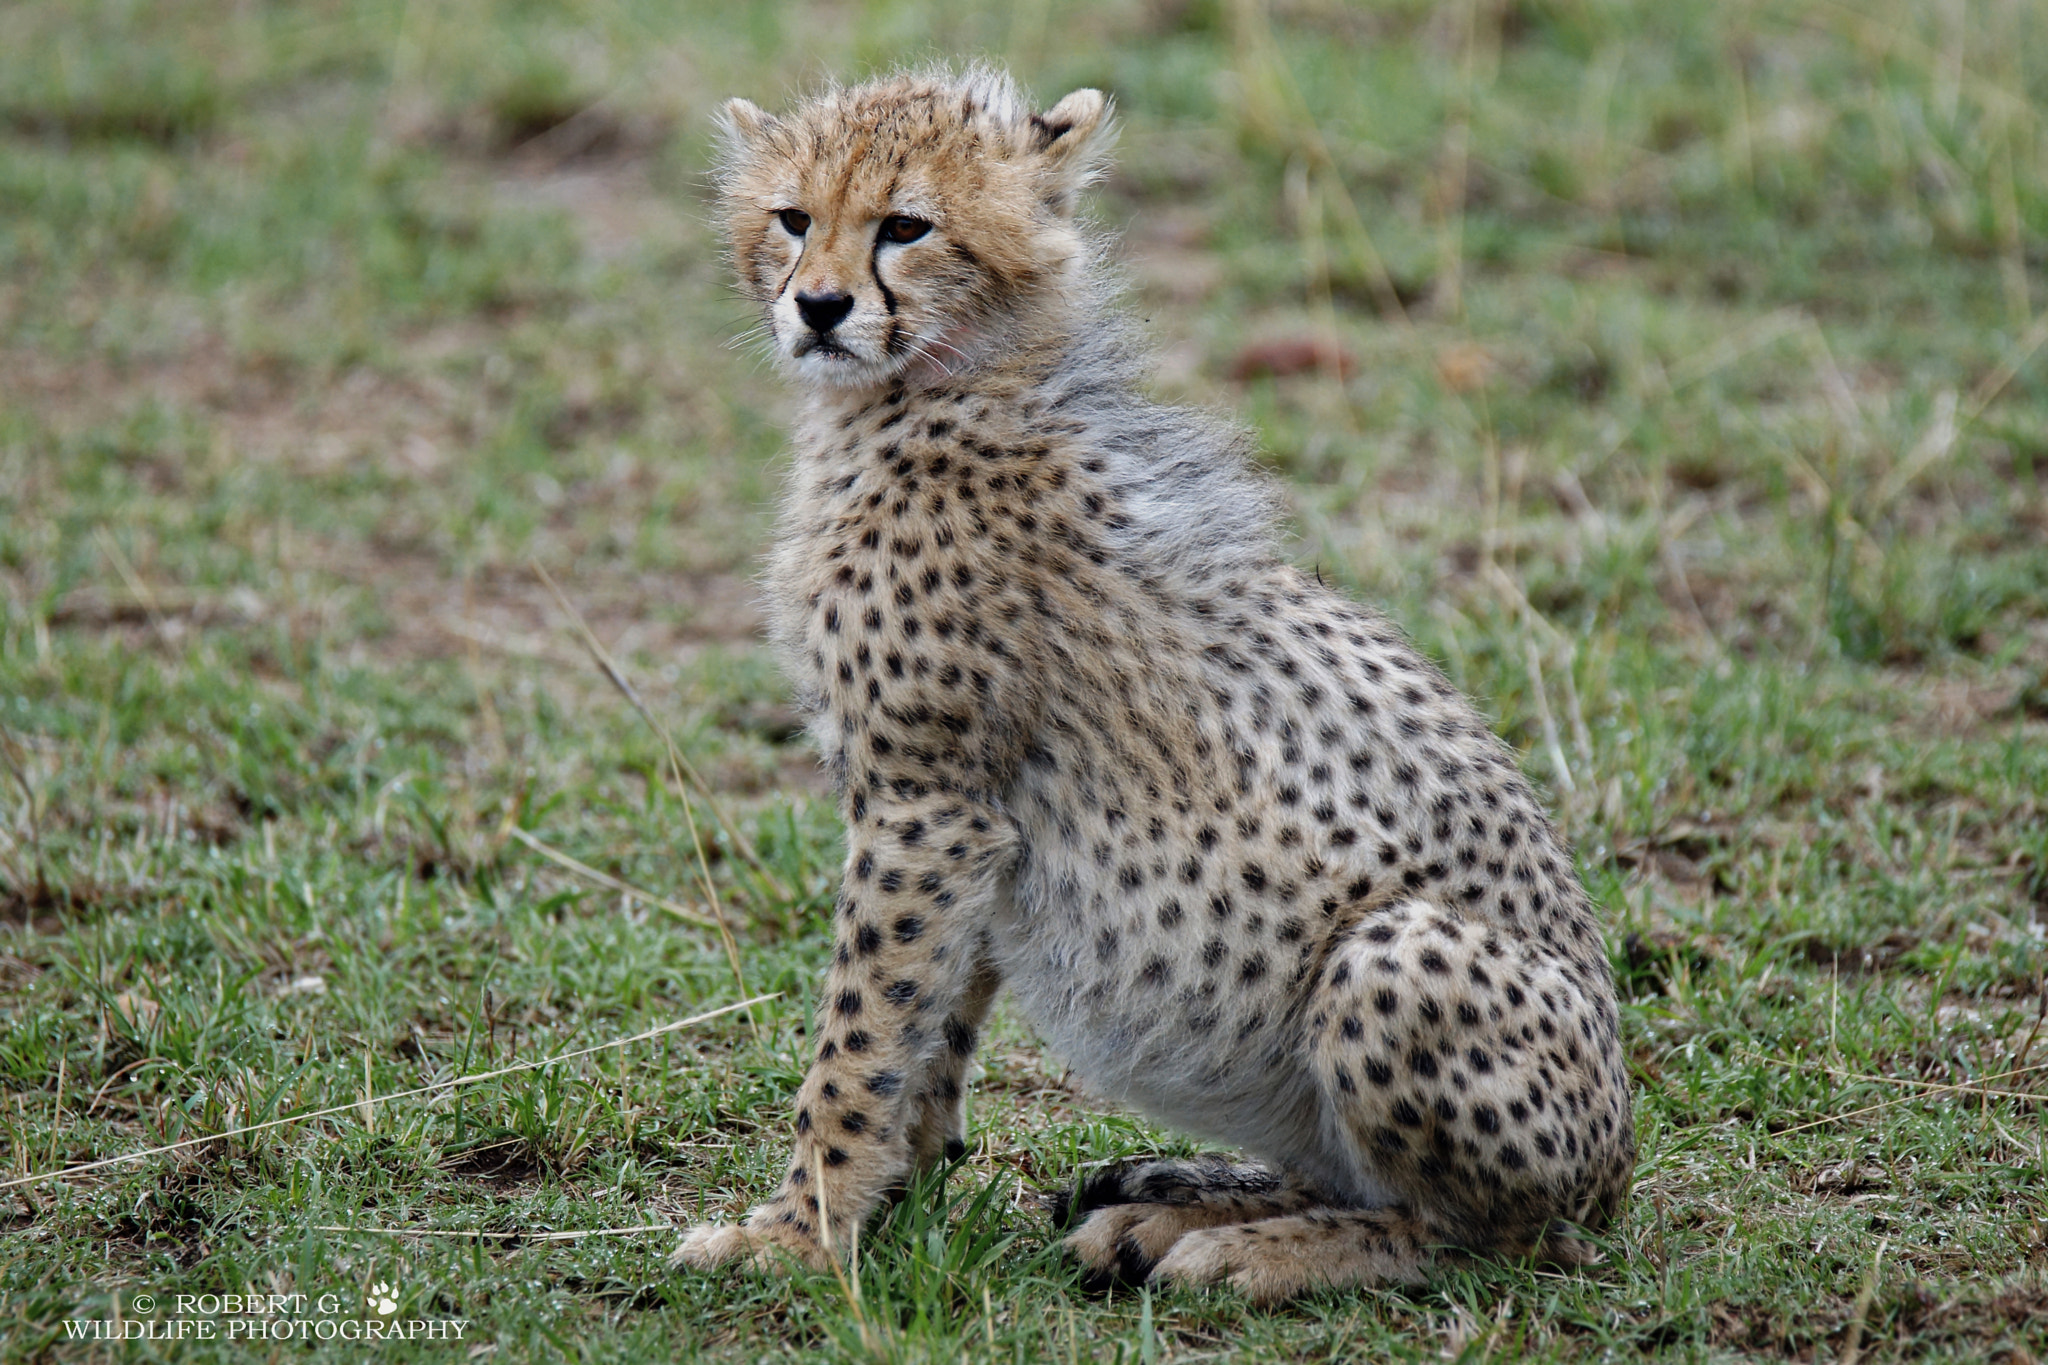 Sony SLT-A77 + Tamron SP 150-600mm F5-6.3 Di VC USD sample photo. Cheetah cub  masai mara 2016 photography